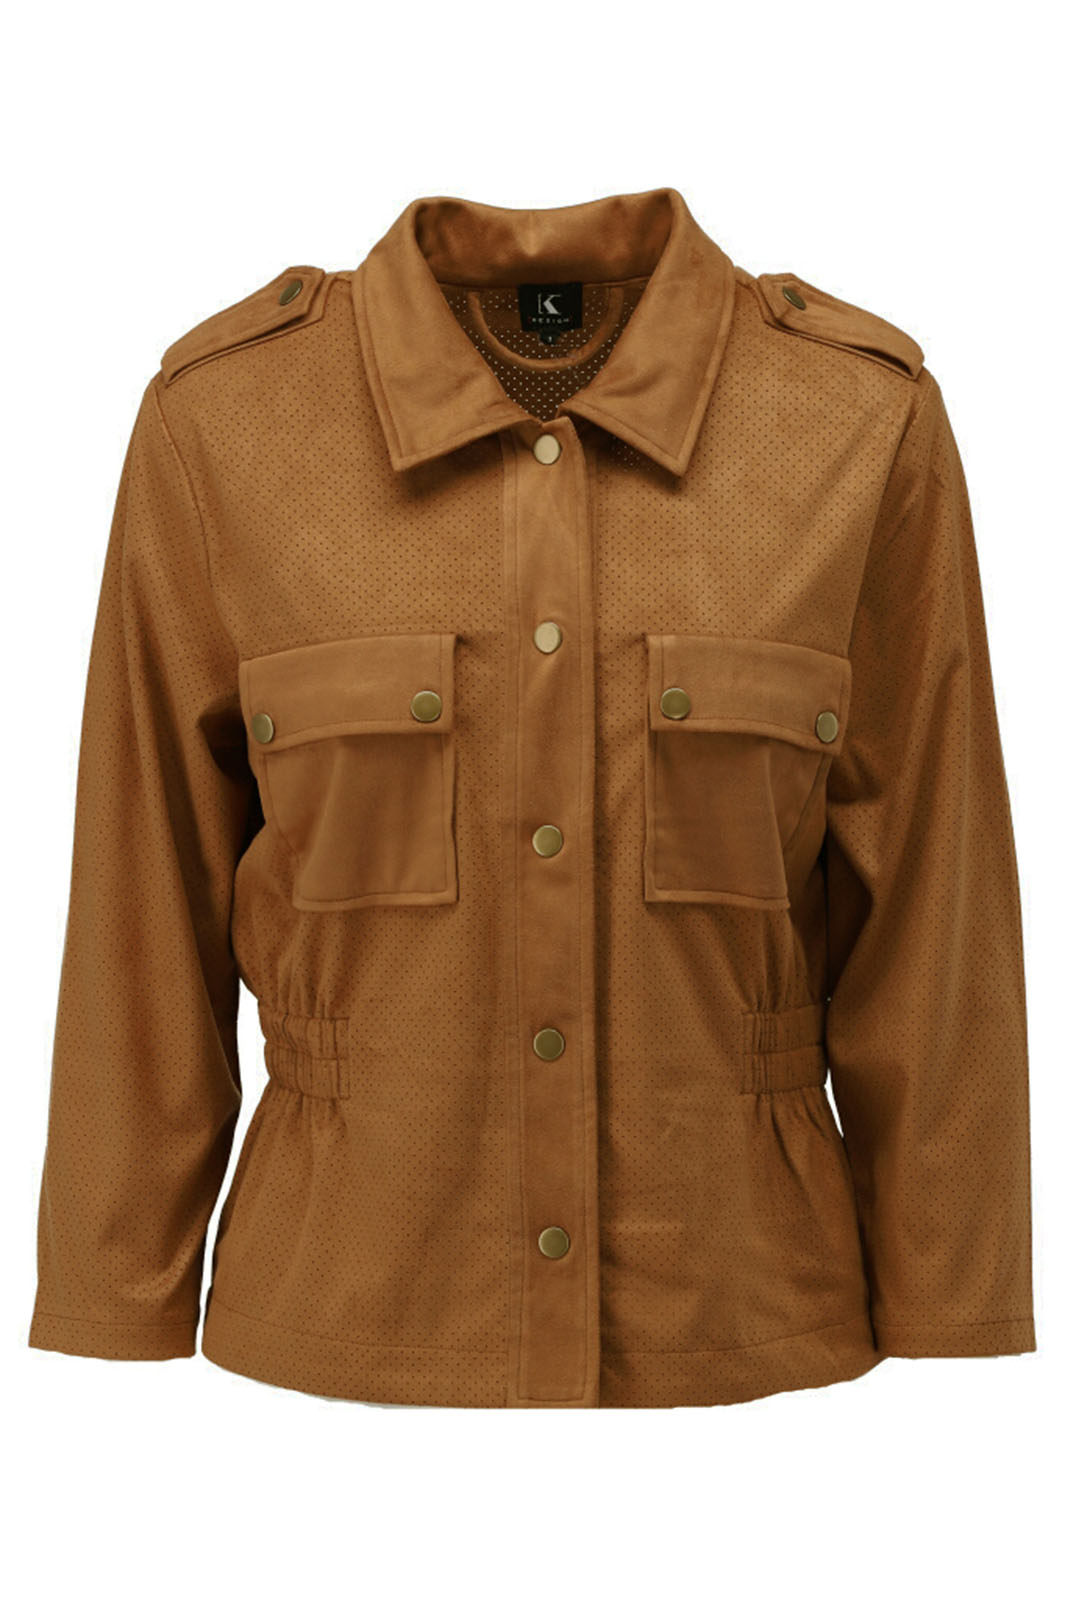 K Design Y910 Brown Toffee Suede Look Jacket - Experience Boutique